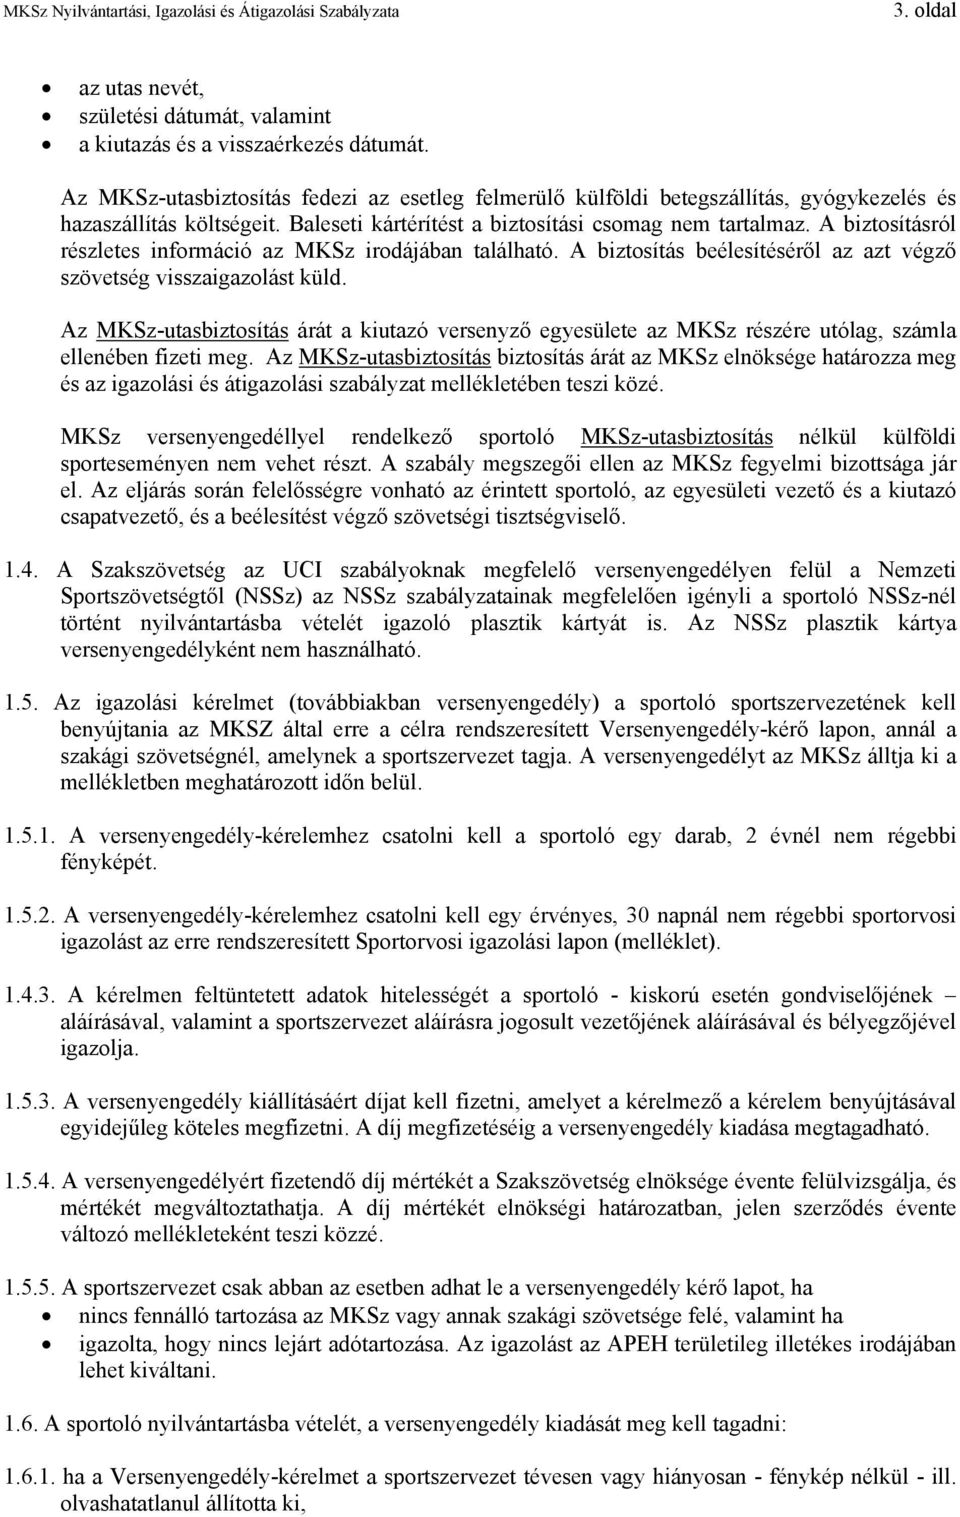 Magyar Kerékpársportok Szövetségének Nyilvántartási, Igazolási és  Átigazolási Szabályzata - PDF Ingyenes letöltés